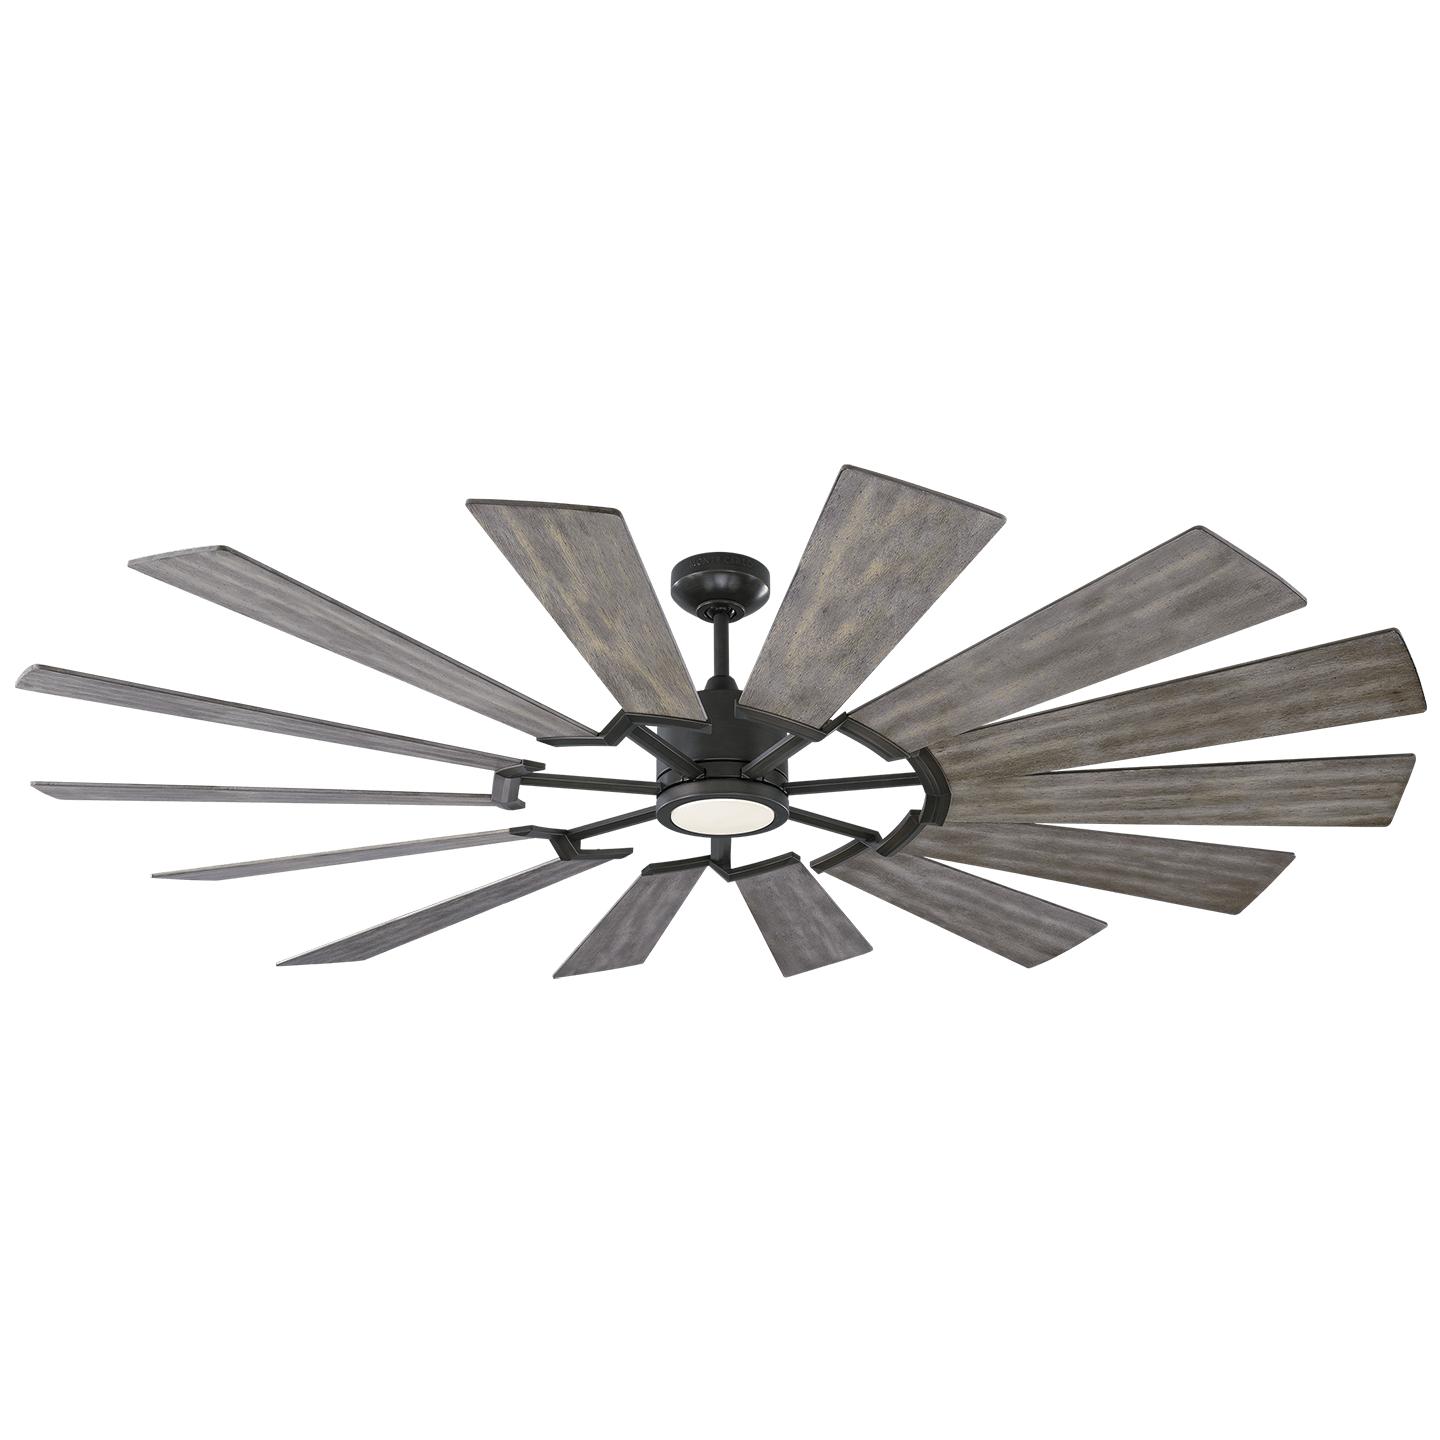 Купить Потолочный вентилятор Prairie 72" LED Ceiling Fan в интернет-магазине roooms.ru